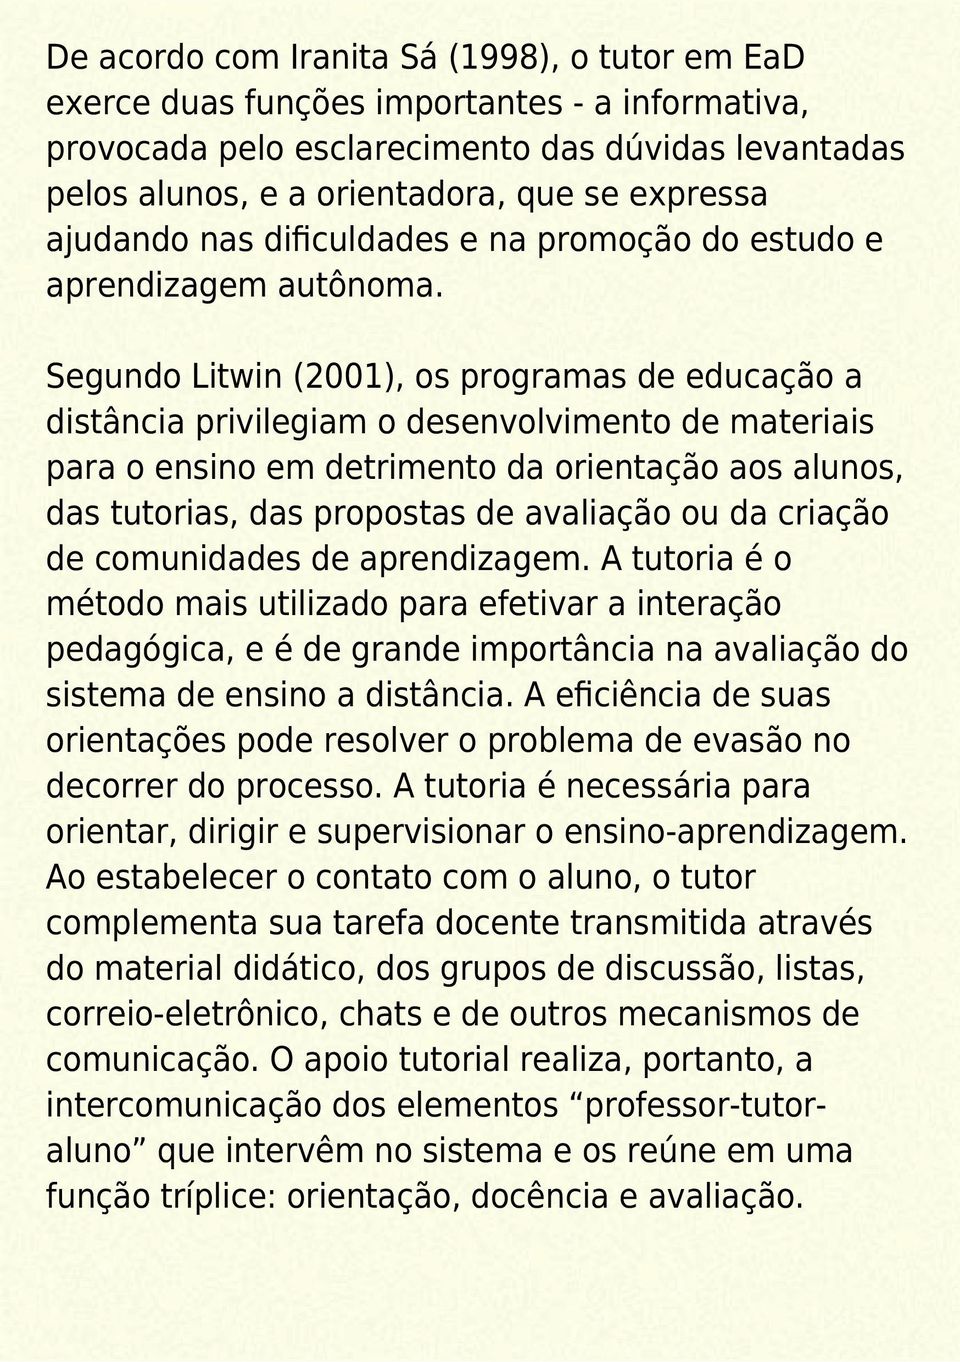 Segundo Litwin (2001), os programas de educação a distância privilegiam o desenvolvimento de materiais para o ensino em detrimento da orientação aos alunos, das tutorias, das propostas de avaliação